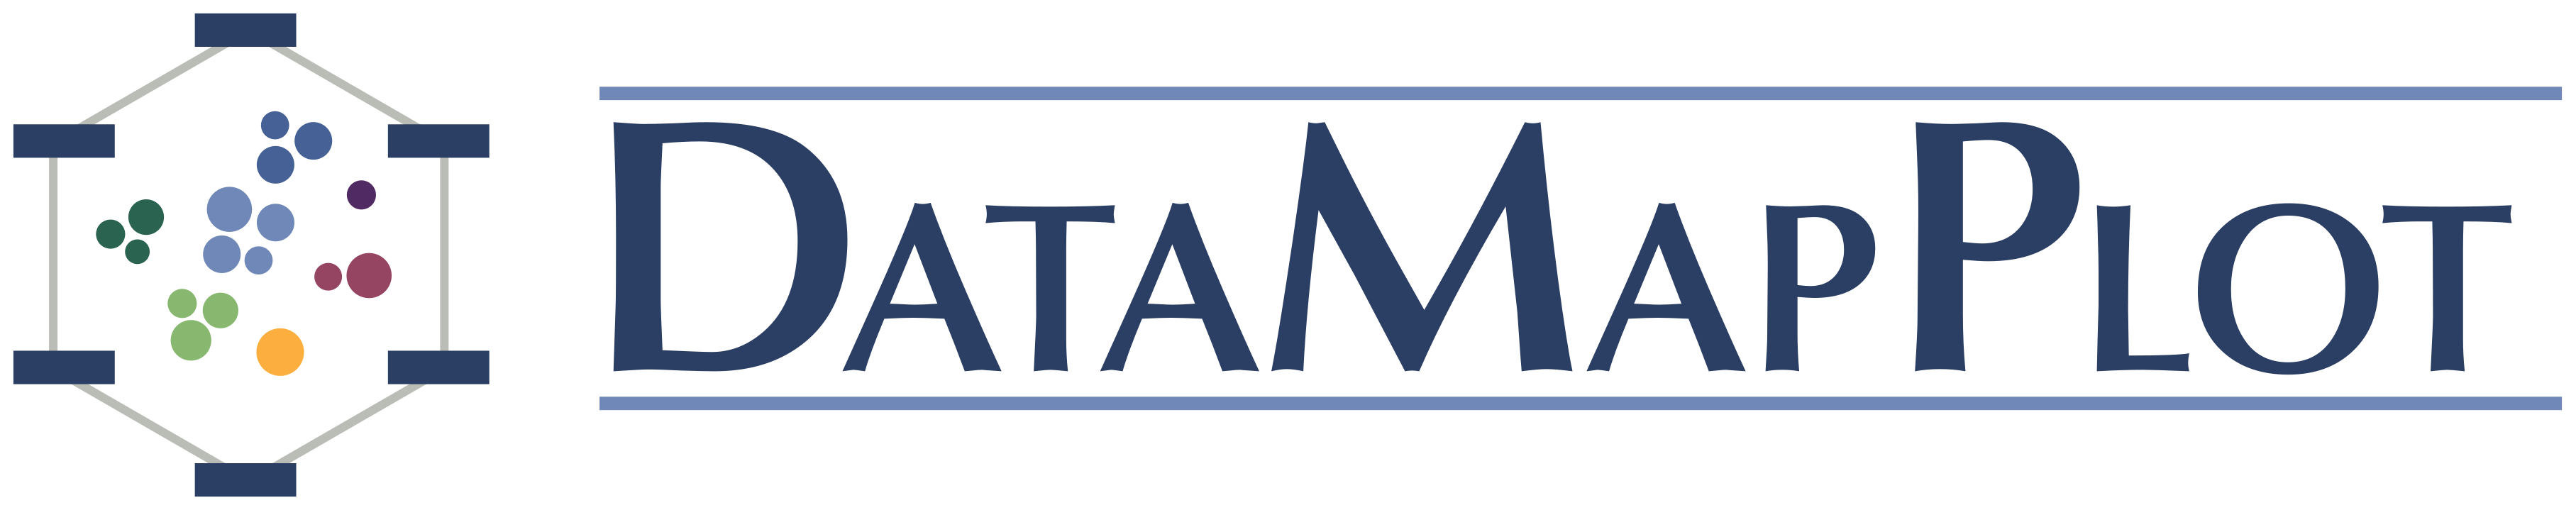 DataMapPlot logo